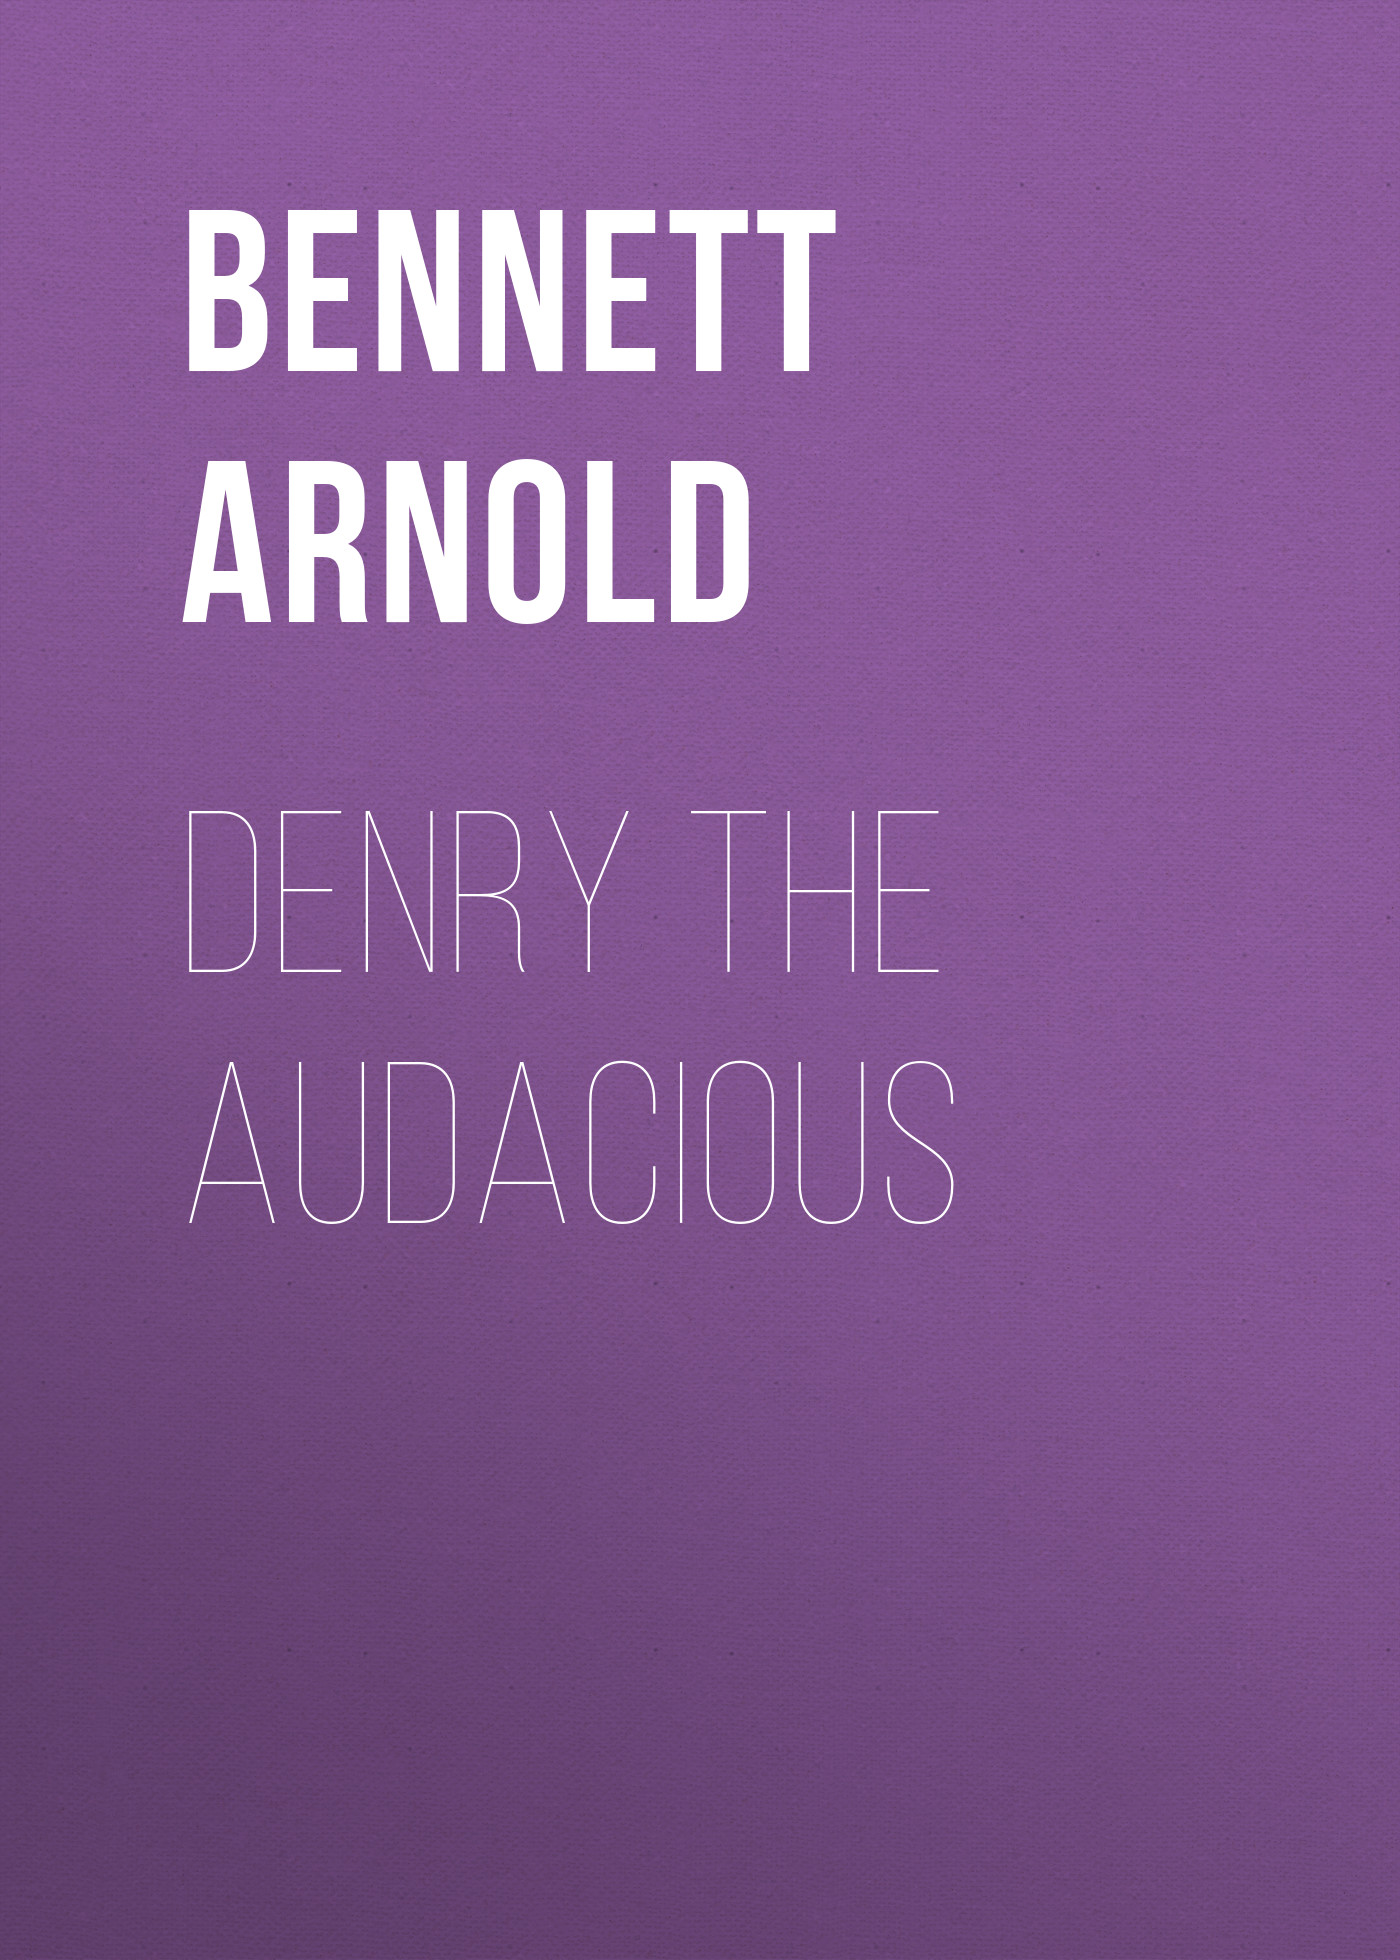 Книга Denry the Audacious из серии , созданная Arnold Bennett, может относится к жанру Иностранные языки, Зарубежная старинная литература, Зарубежная классика. Стоимость электронной книги Denry the Audacious с идентификатором 24172700 составляет 0.90 руб.